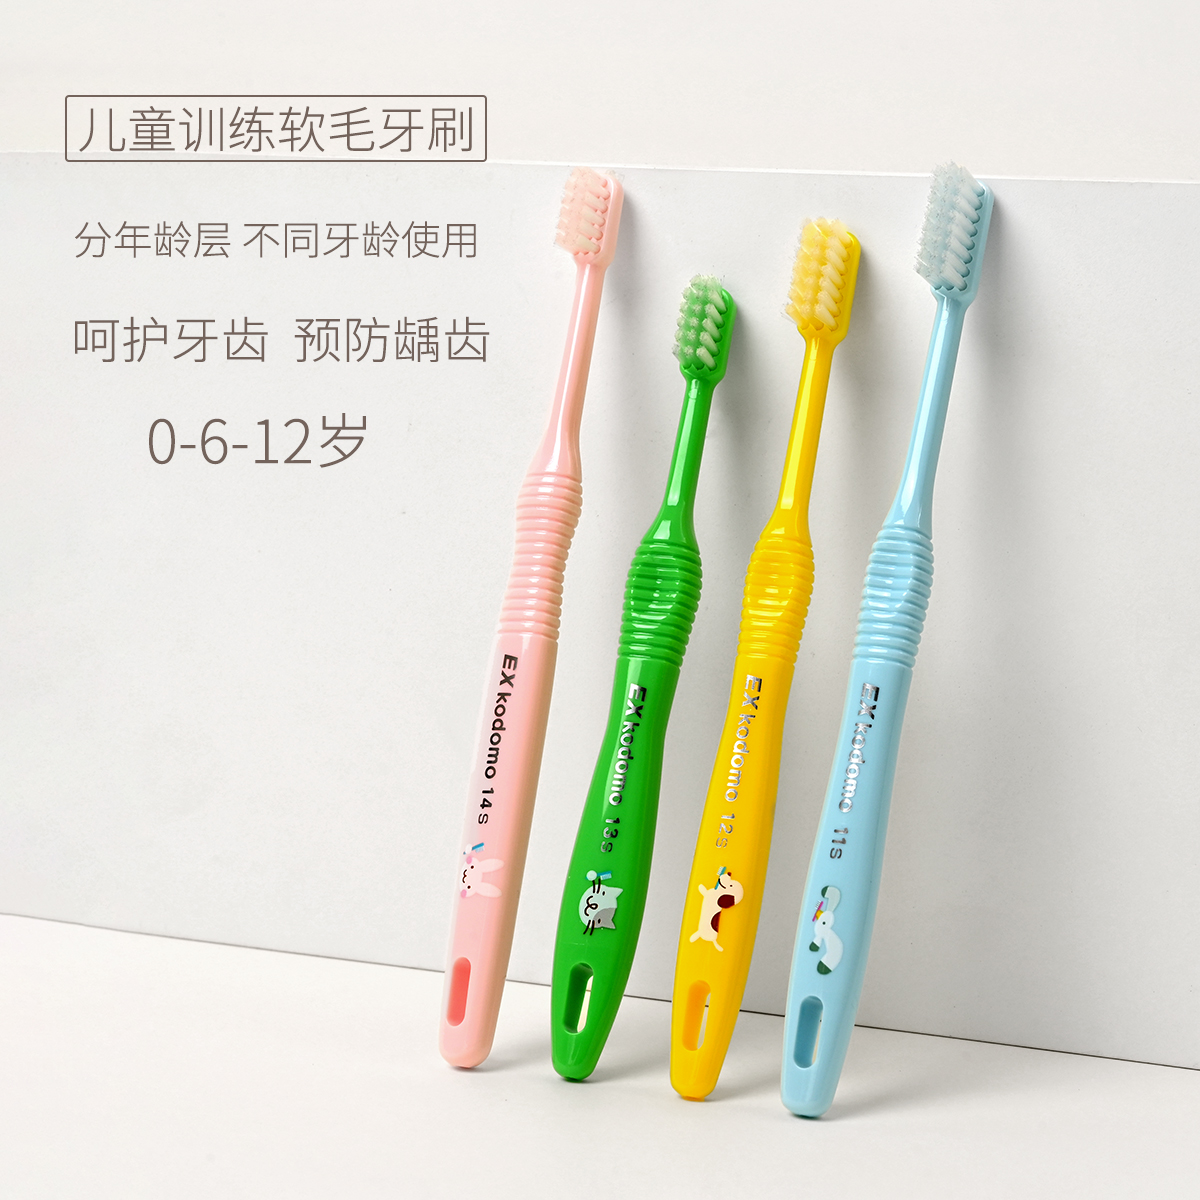 日本进口 儿童牙刷 婴幼儿训练防滑软毛乳牙刷 分年龄层呵护牙齿 婴童用品 乳牙刷/训练牙刷/护齿牙刷 原图主图